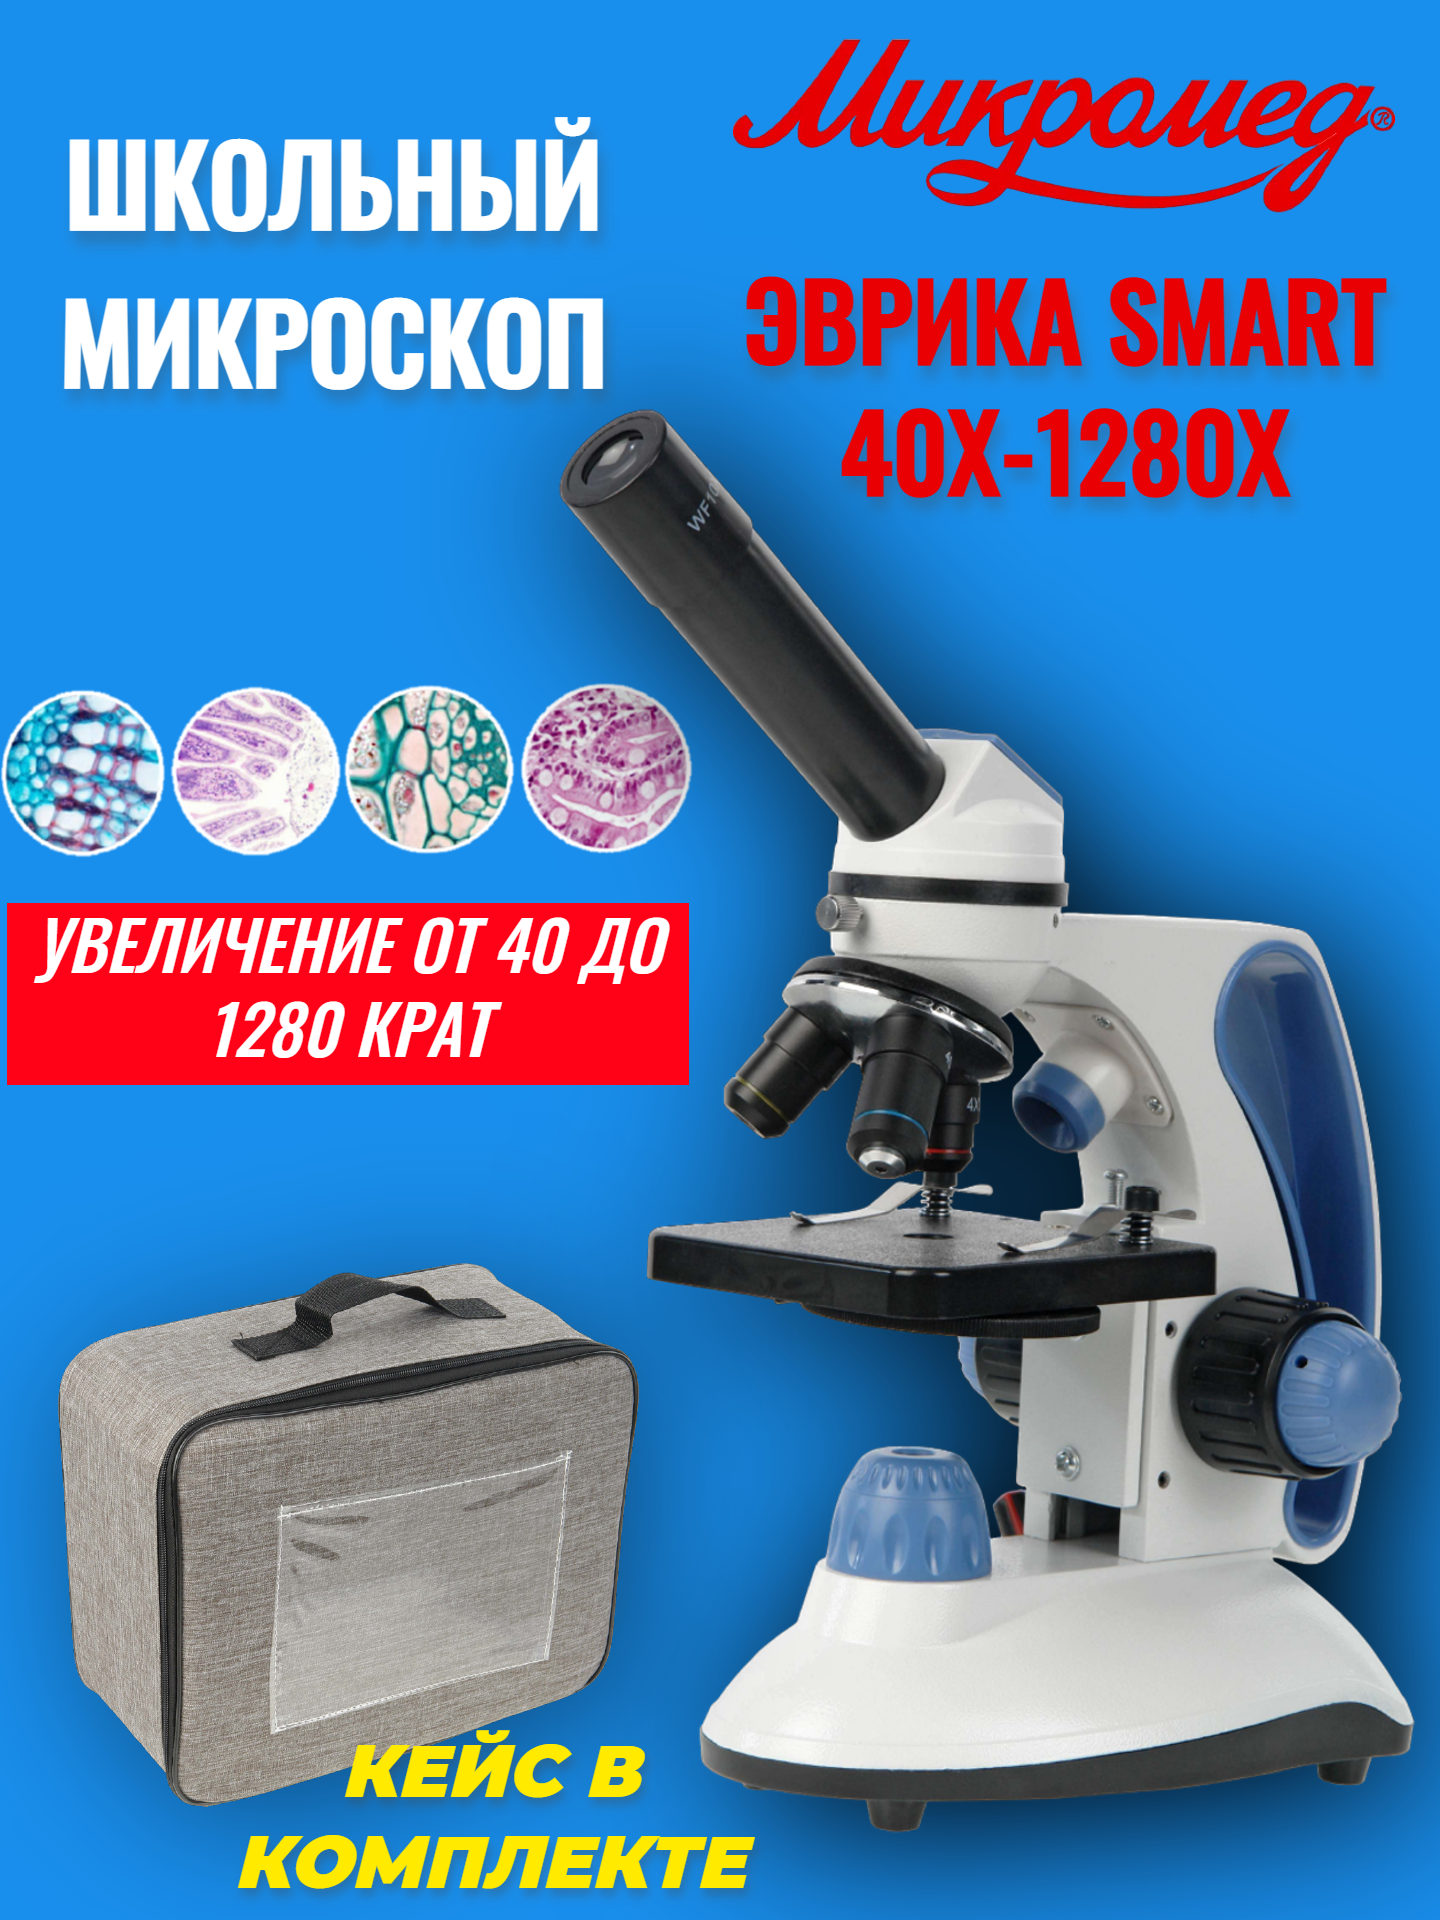 Микроскоп школьный учебный Микромед Эврика SMART 40х-1280х в текстильном кейсе держатель для крышки объектива fujimi fcb 4 72mm 77mm 82mm